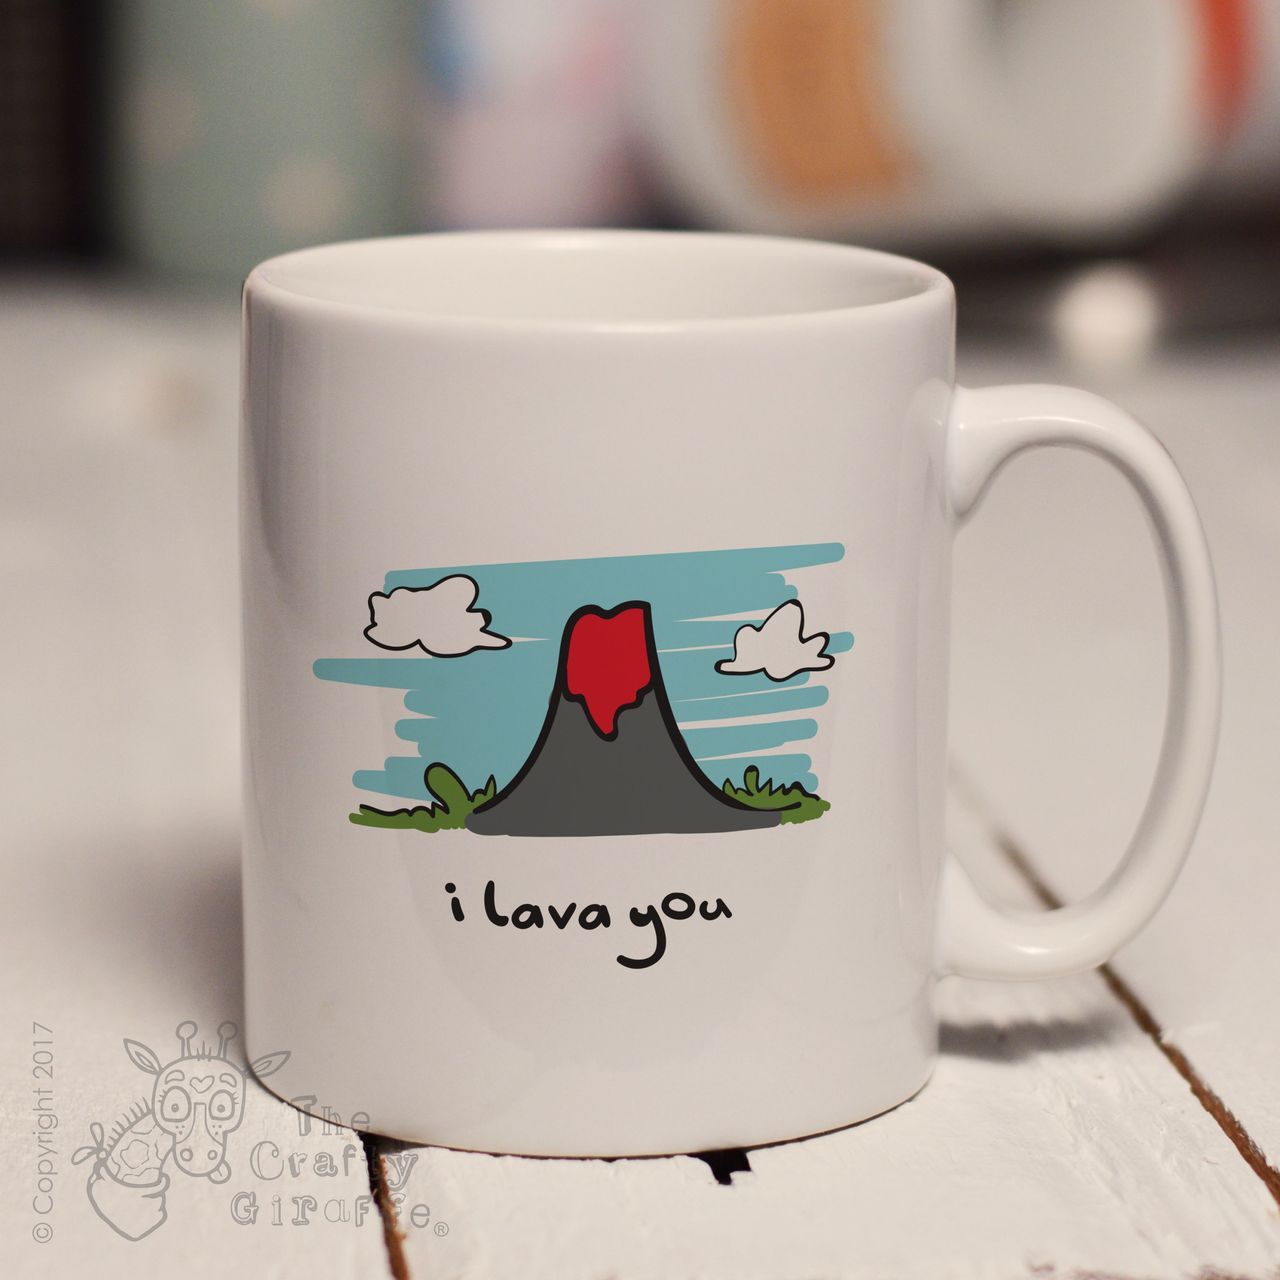 I lava you mug